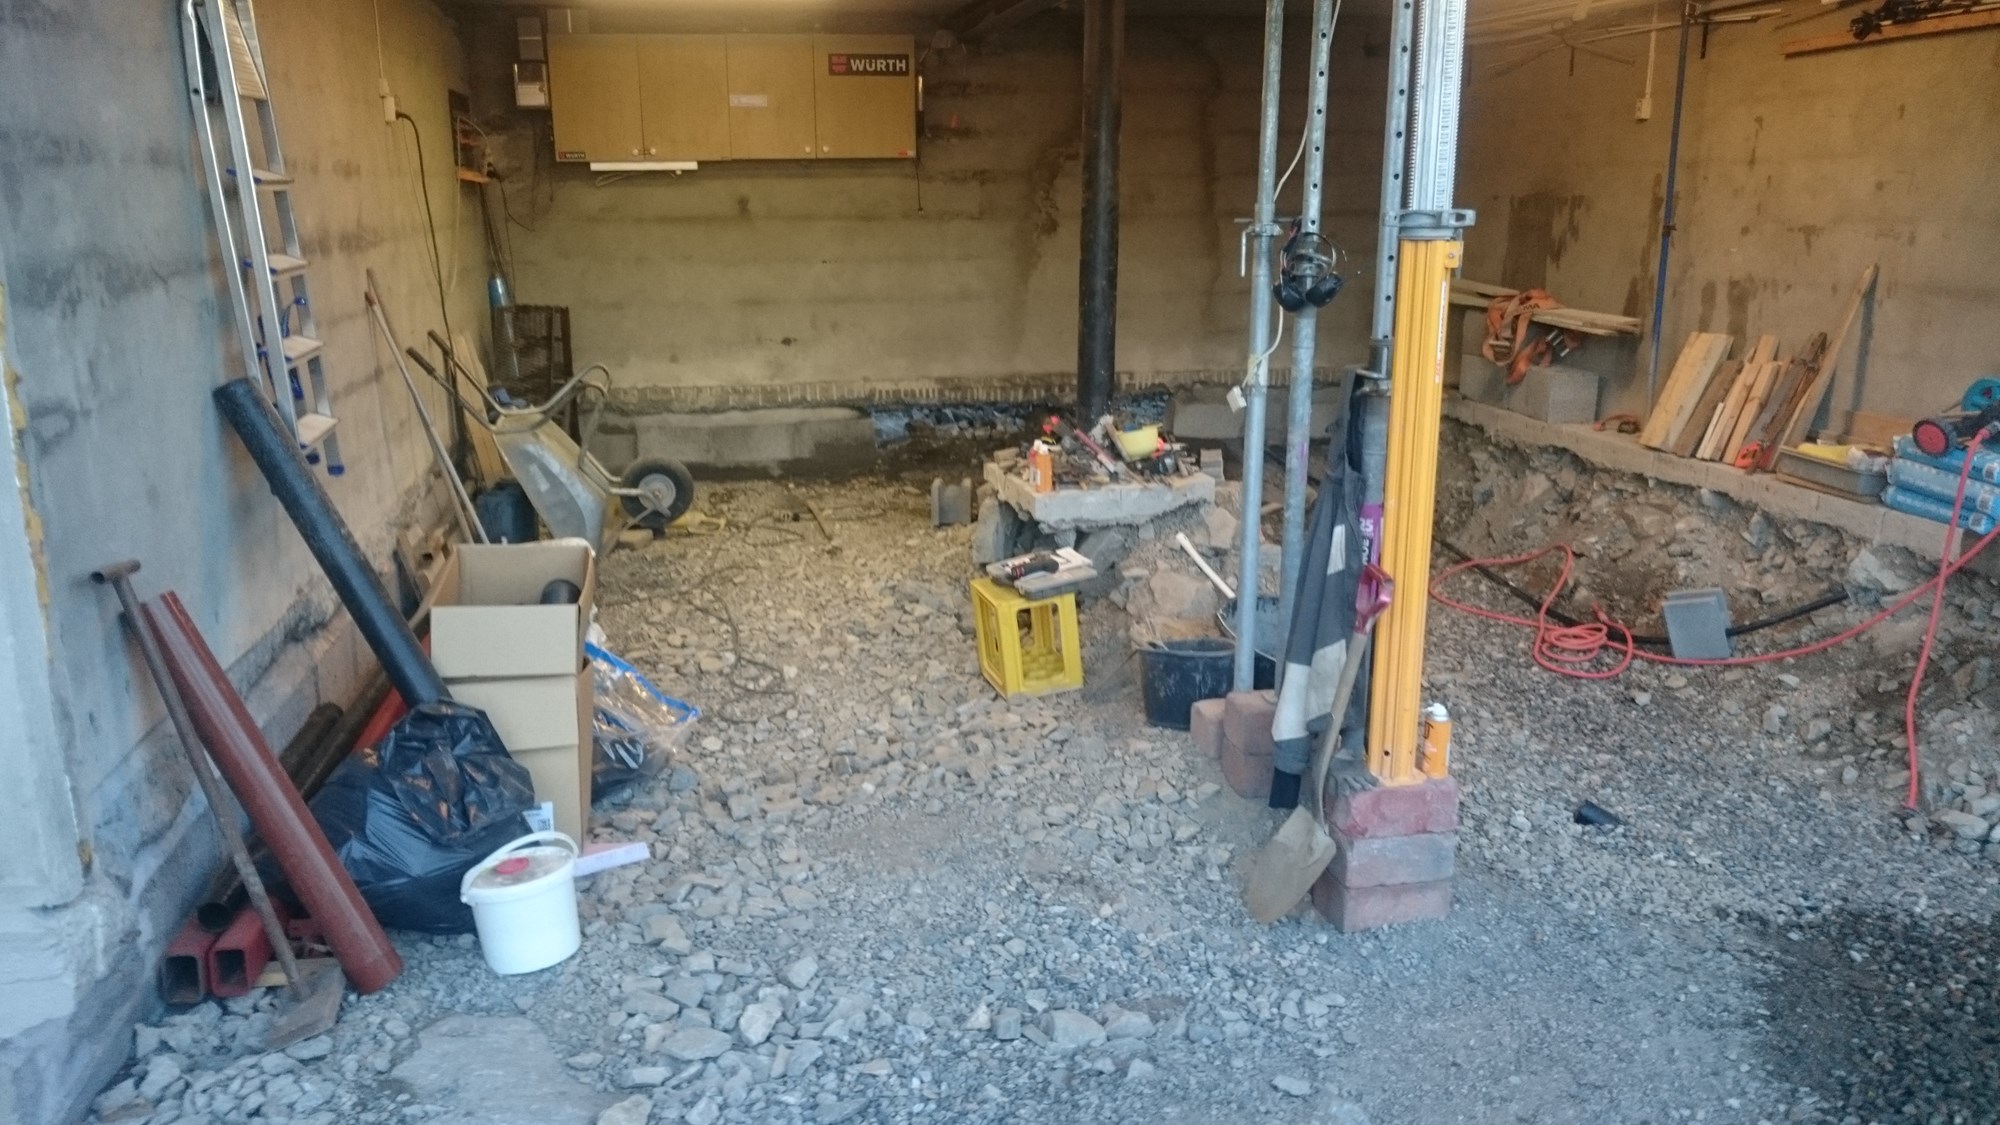 Senke gulv i garasje i sokkel - fremgangsmåte for understøping(bygging) - lecavegger -  - Remo